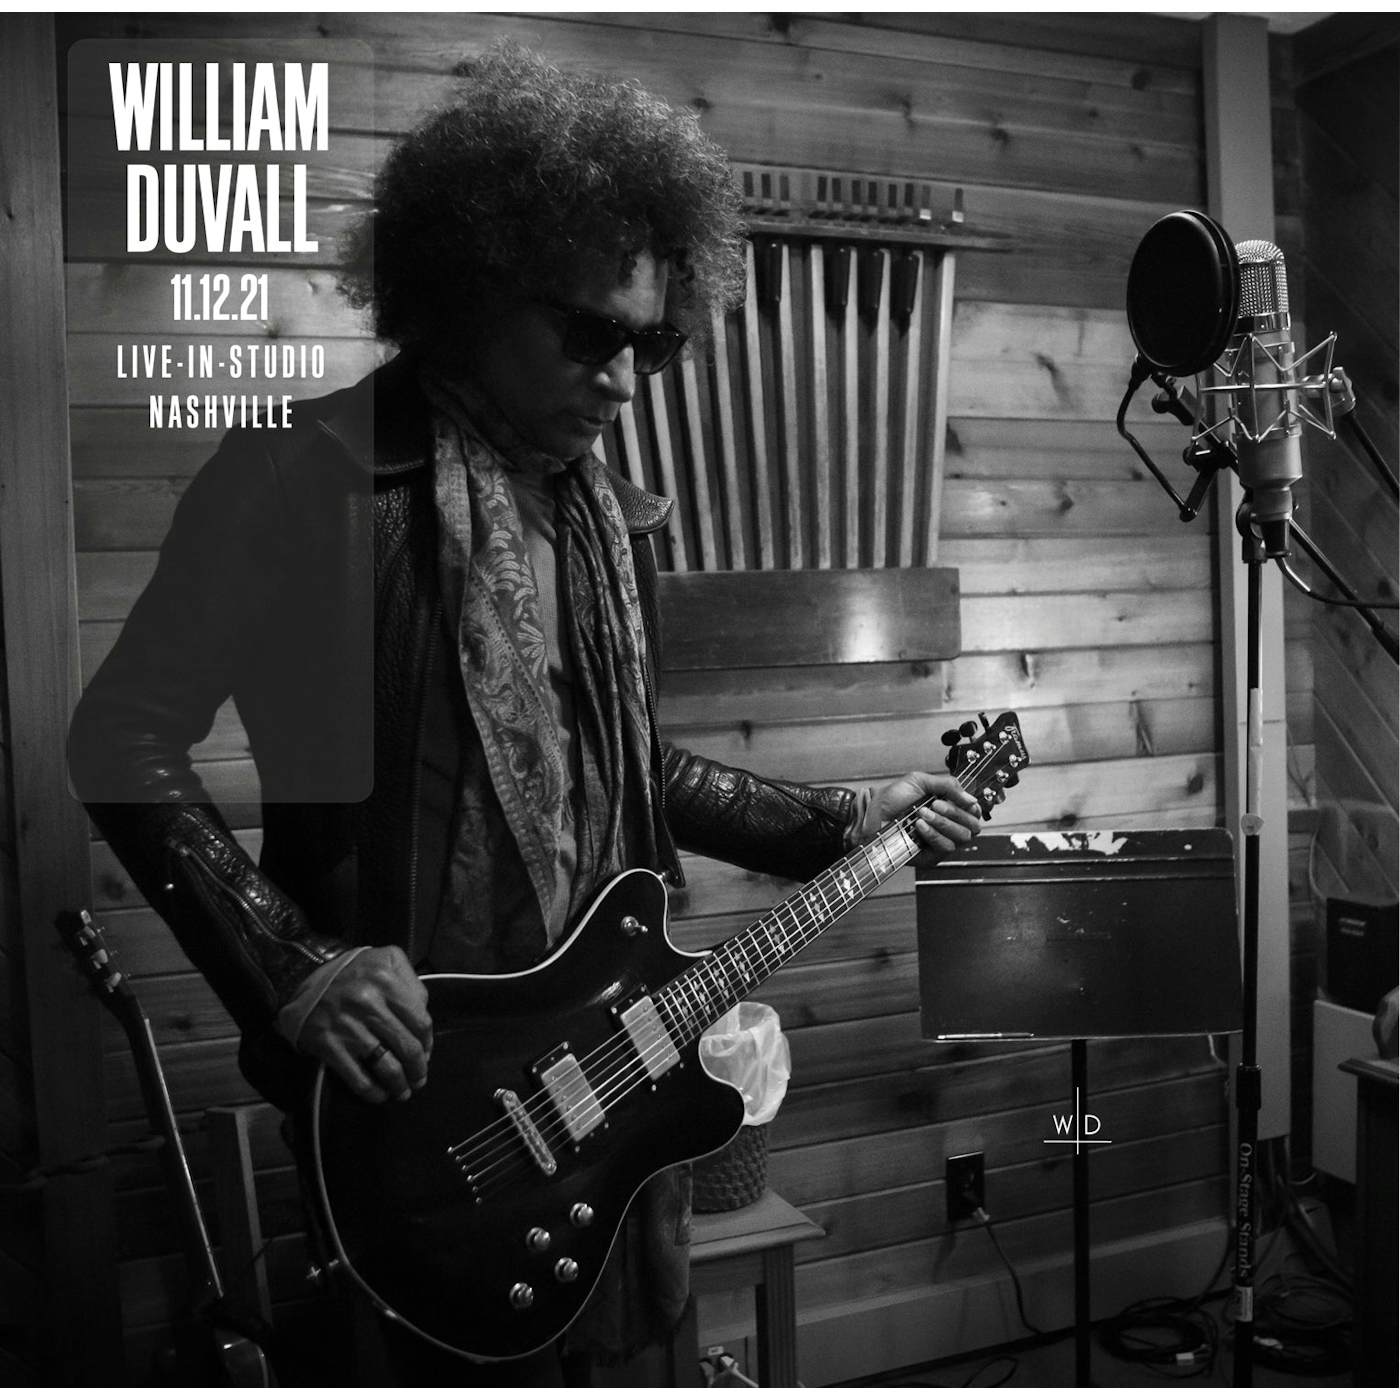 William DuVall '11.12.21 Live-In-Studio Nashville' Vinyl Record